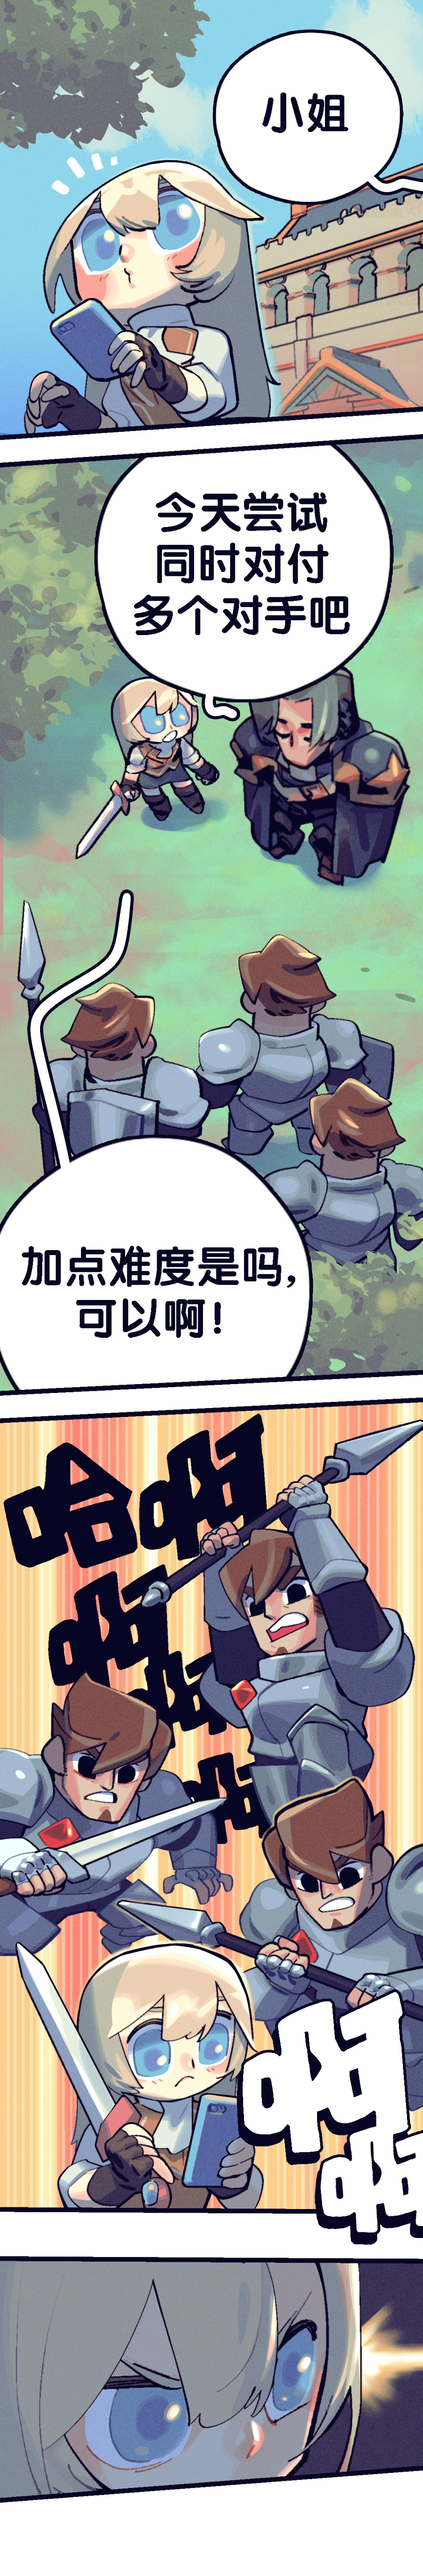 【远征漫画】《好的！小姐》  第11&12话|剑与远征 - 第2张